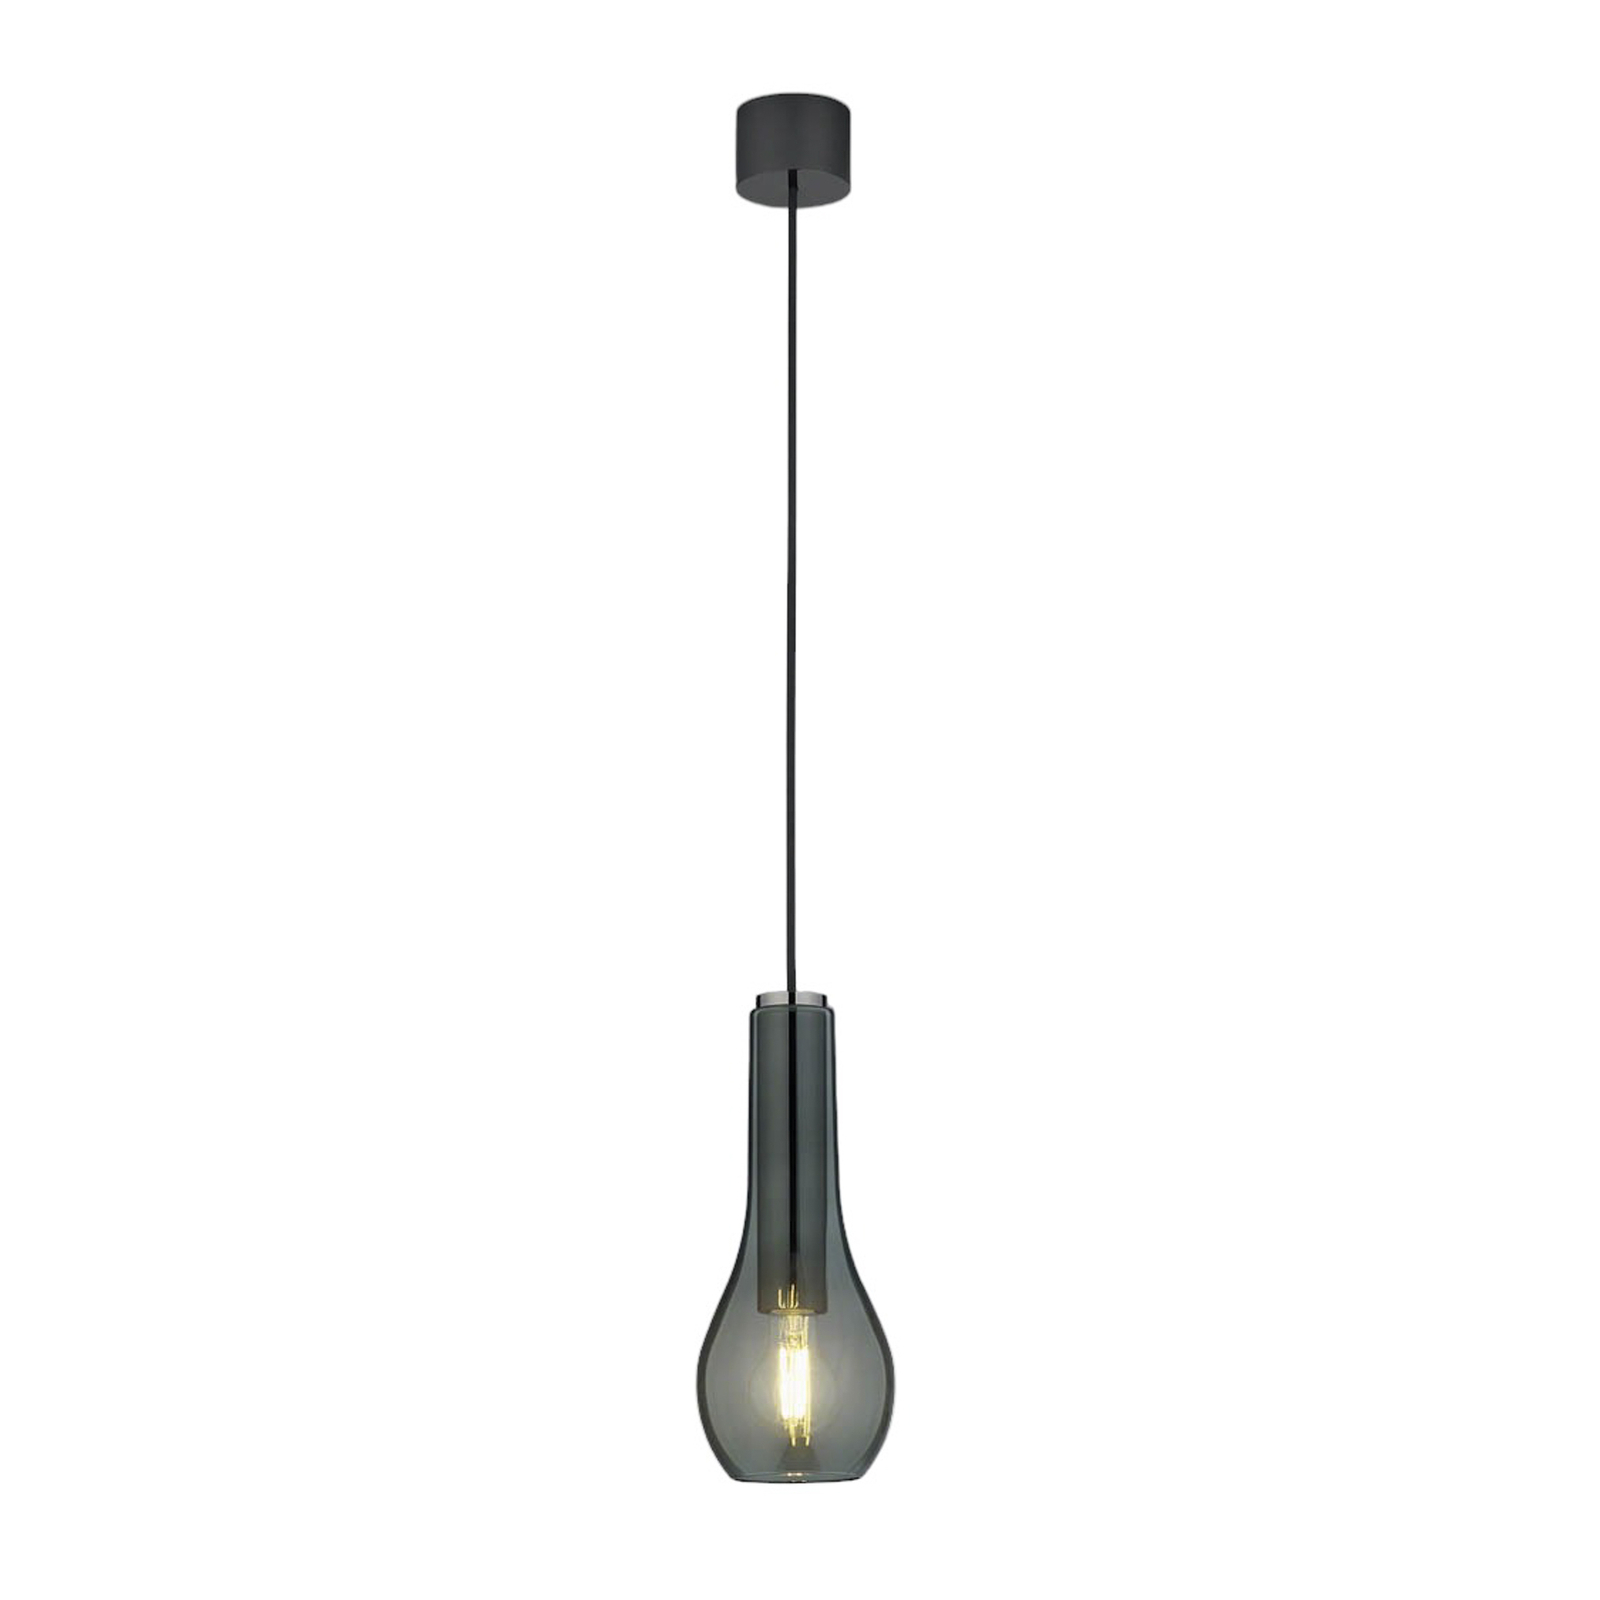 Hanglamp Gara met rookglas-kap, 1-lamp